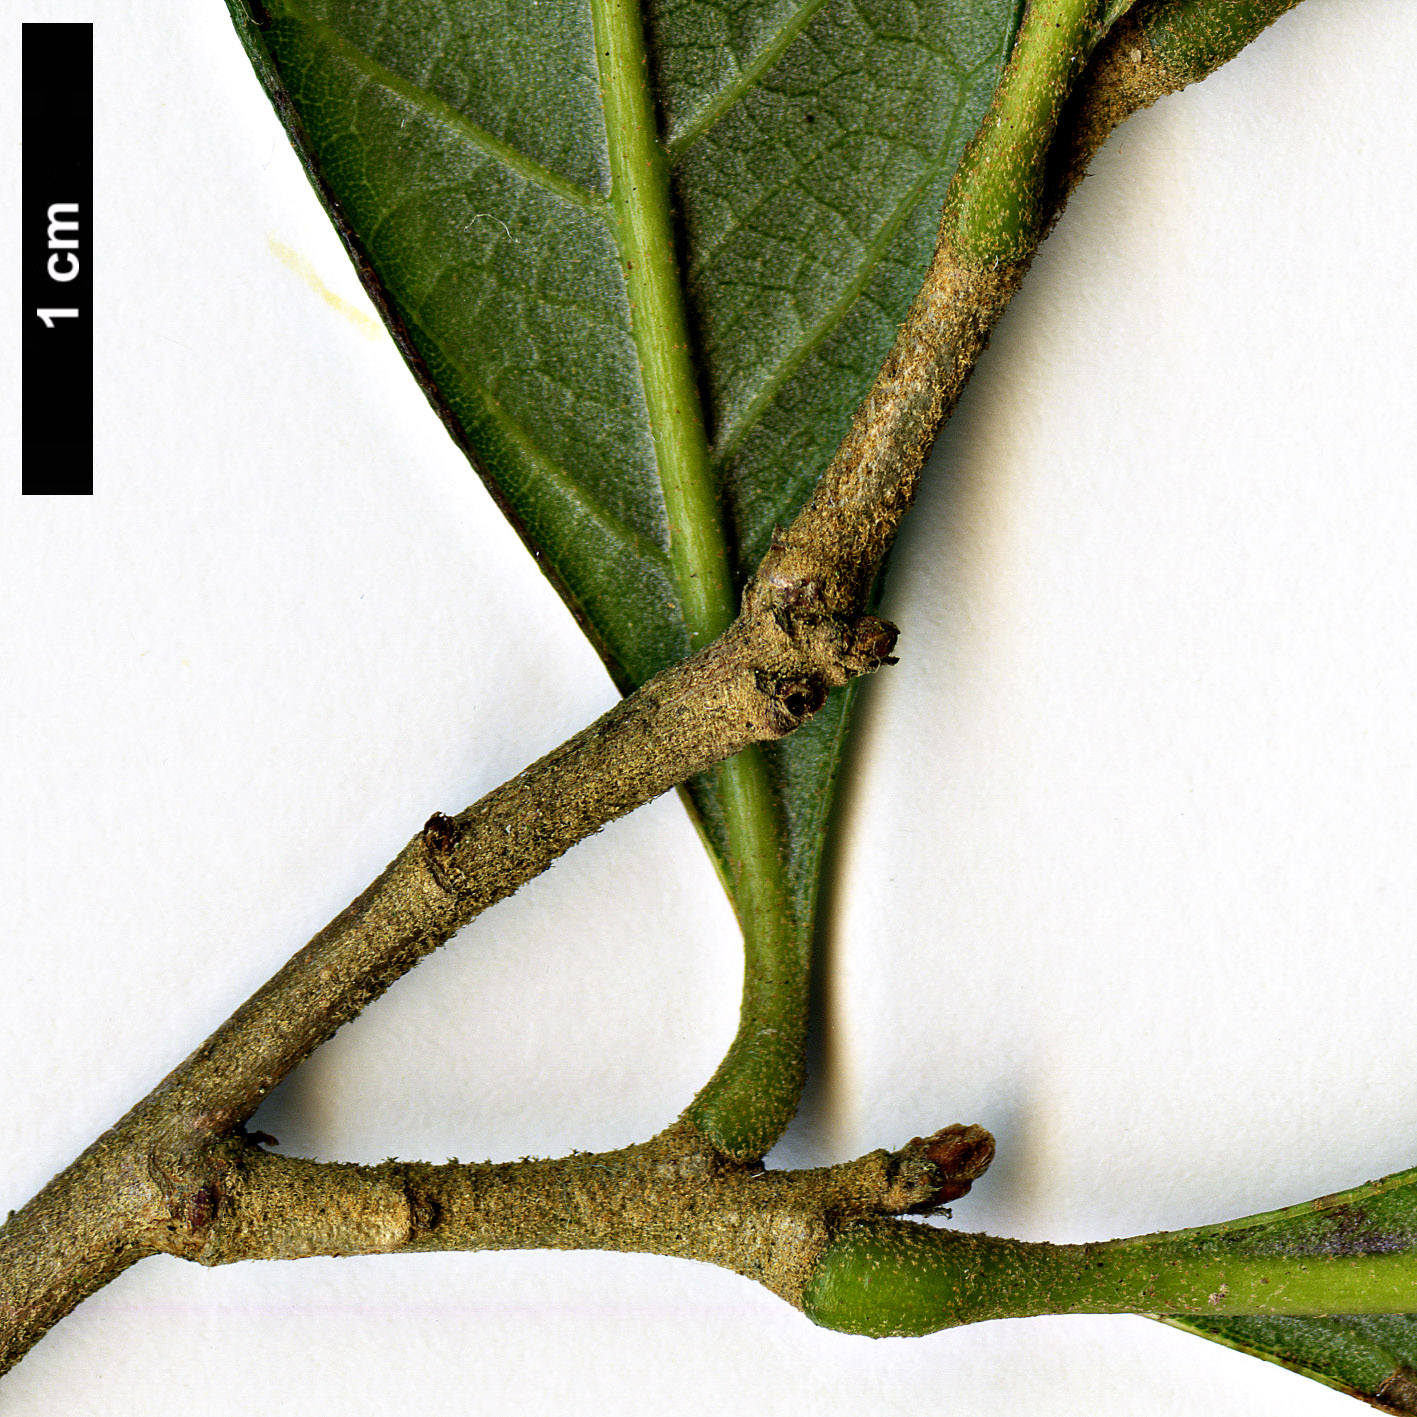 High resolution image: Family: Fagaceae - Genus: Quercus - Taxon: cubana